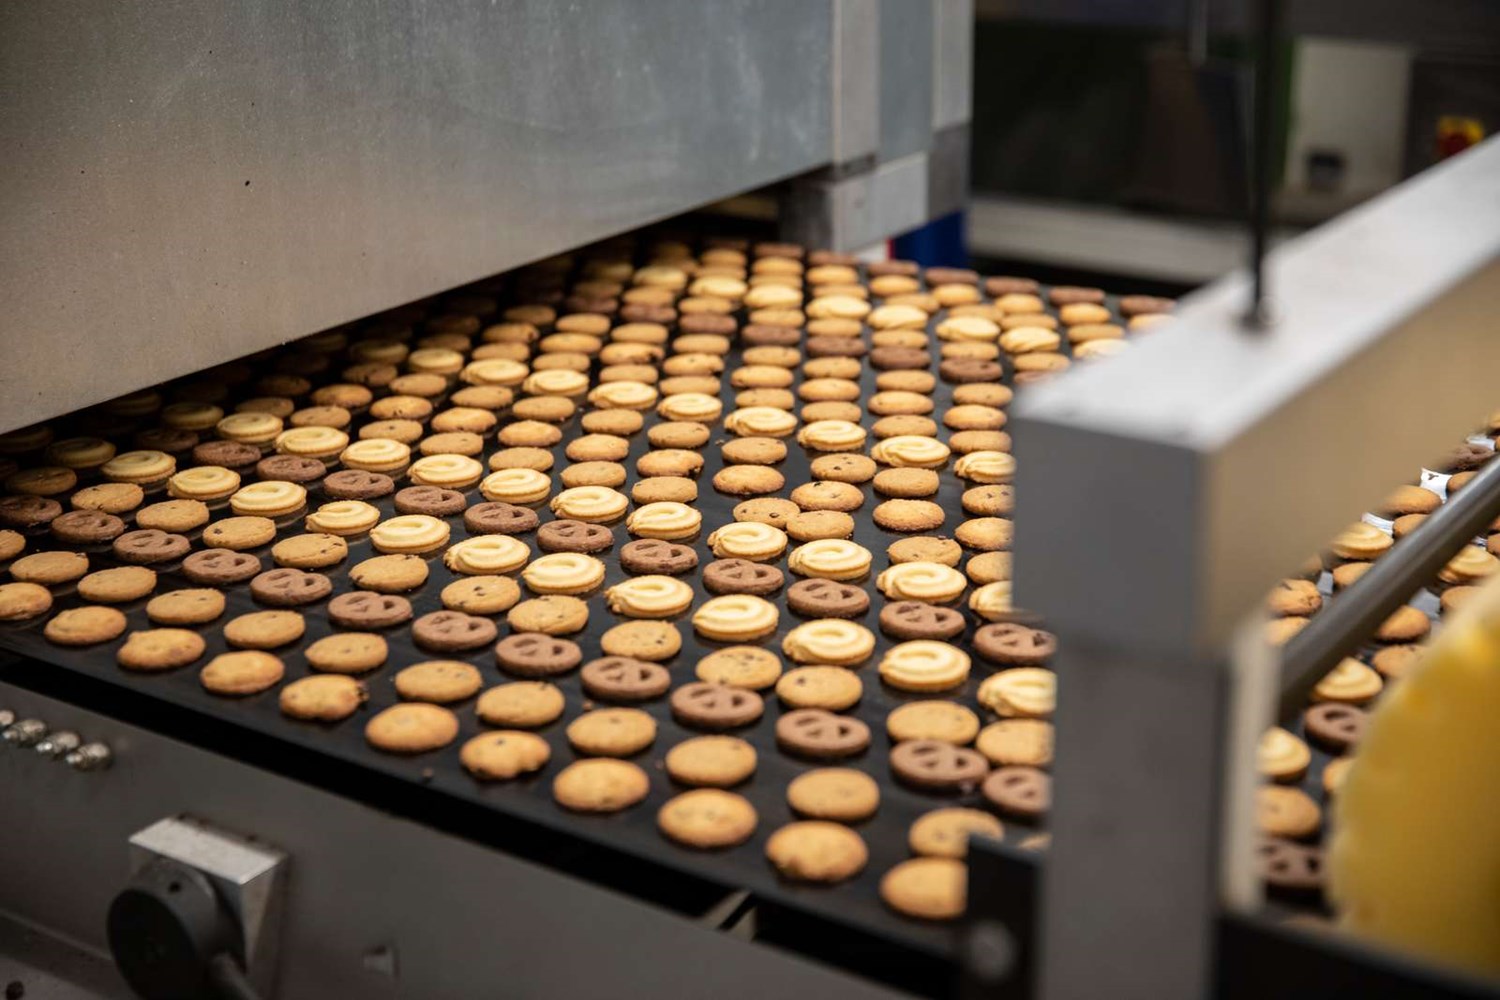 Kelsen i Nr. Snede producerer de verdensberømte 'Danish Butter Cookies', der eksporteres til både USA og Kina i store mængder.